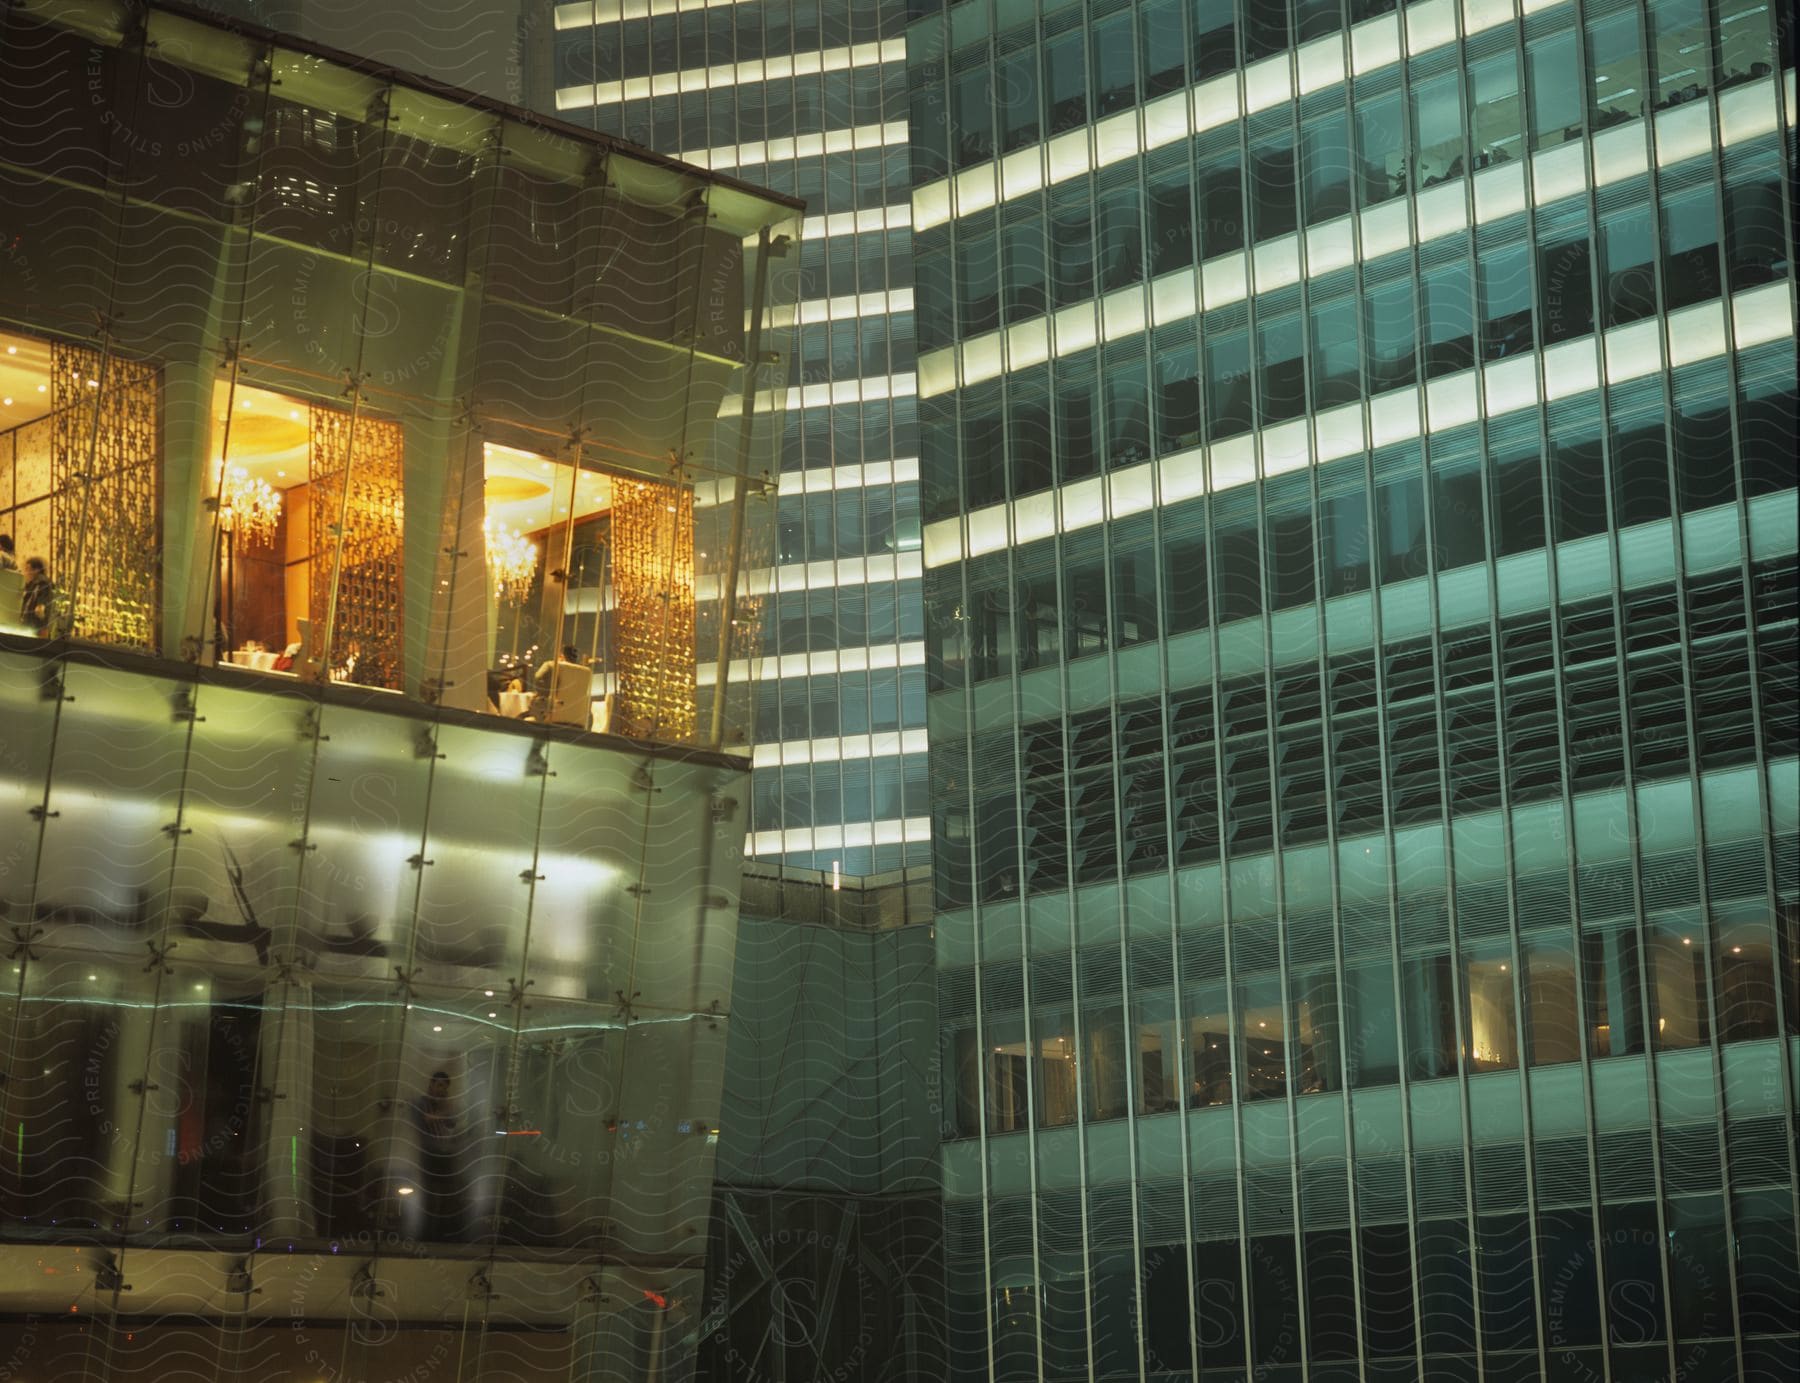 Interior lights shine through the glass exterior of a building